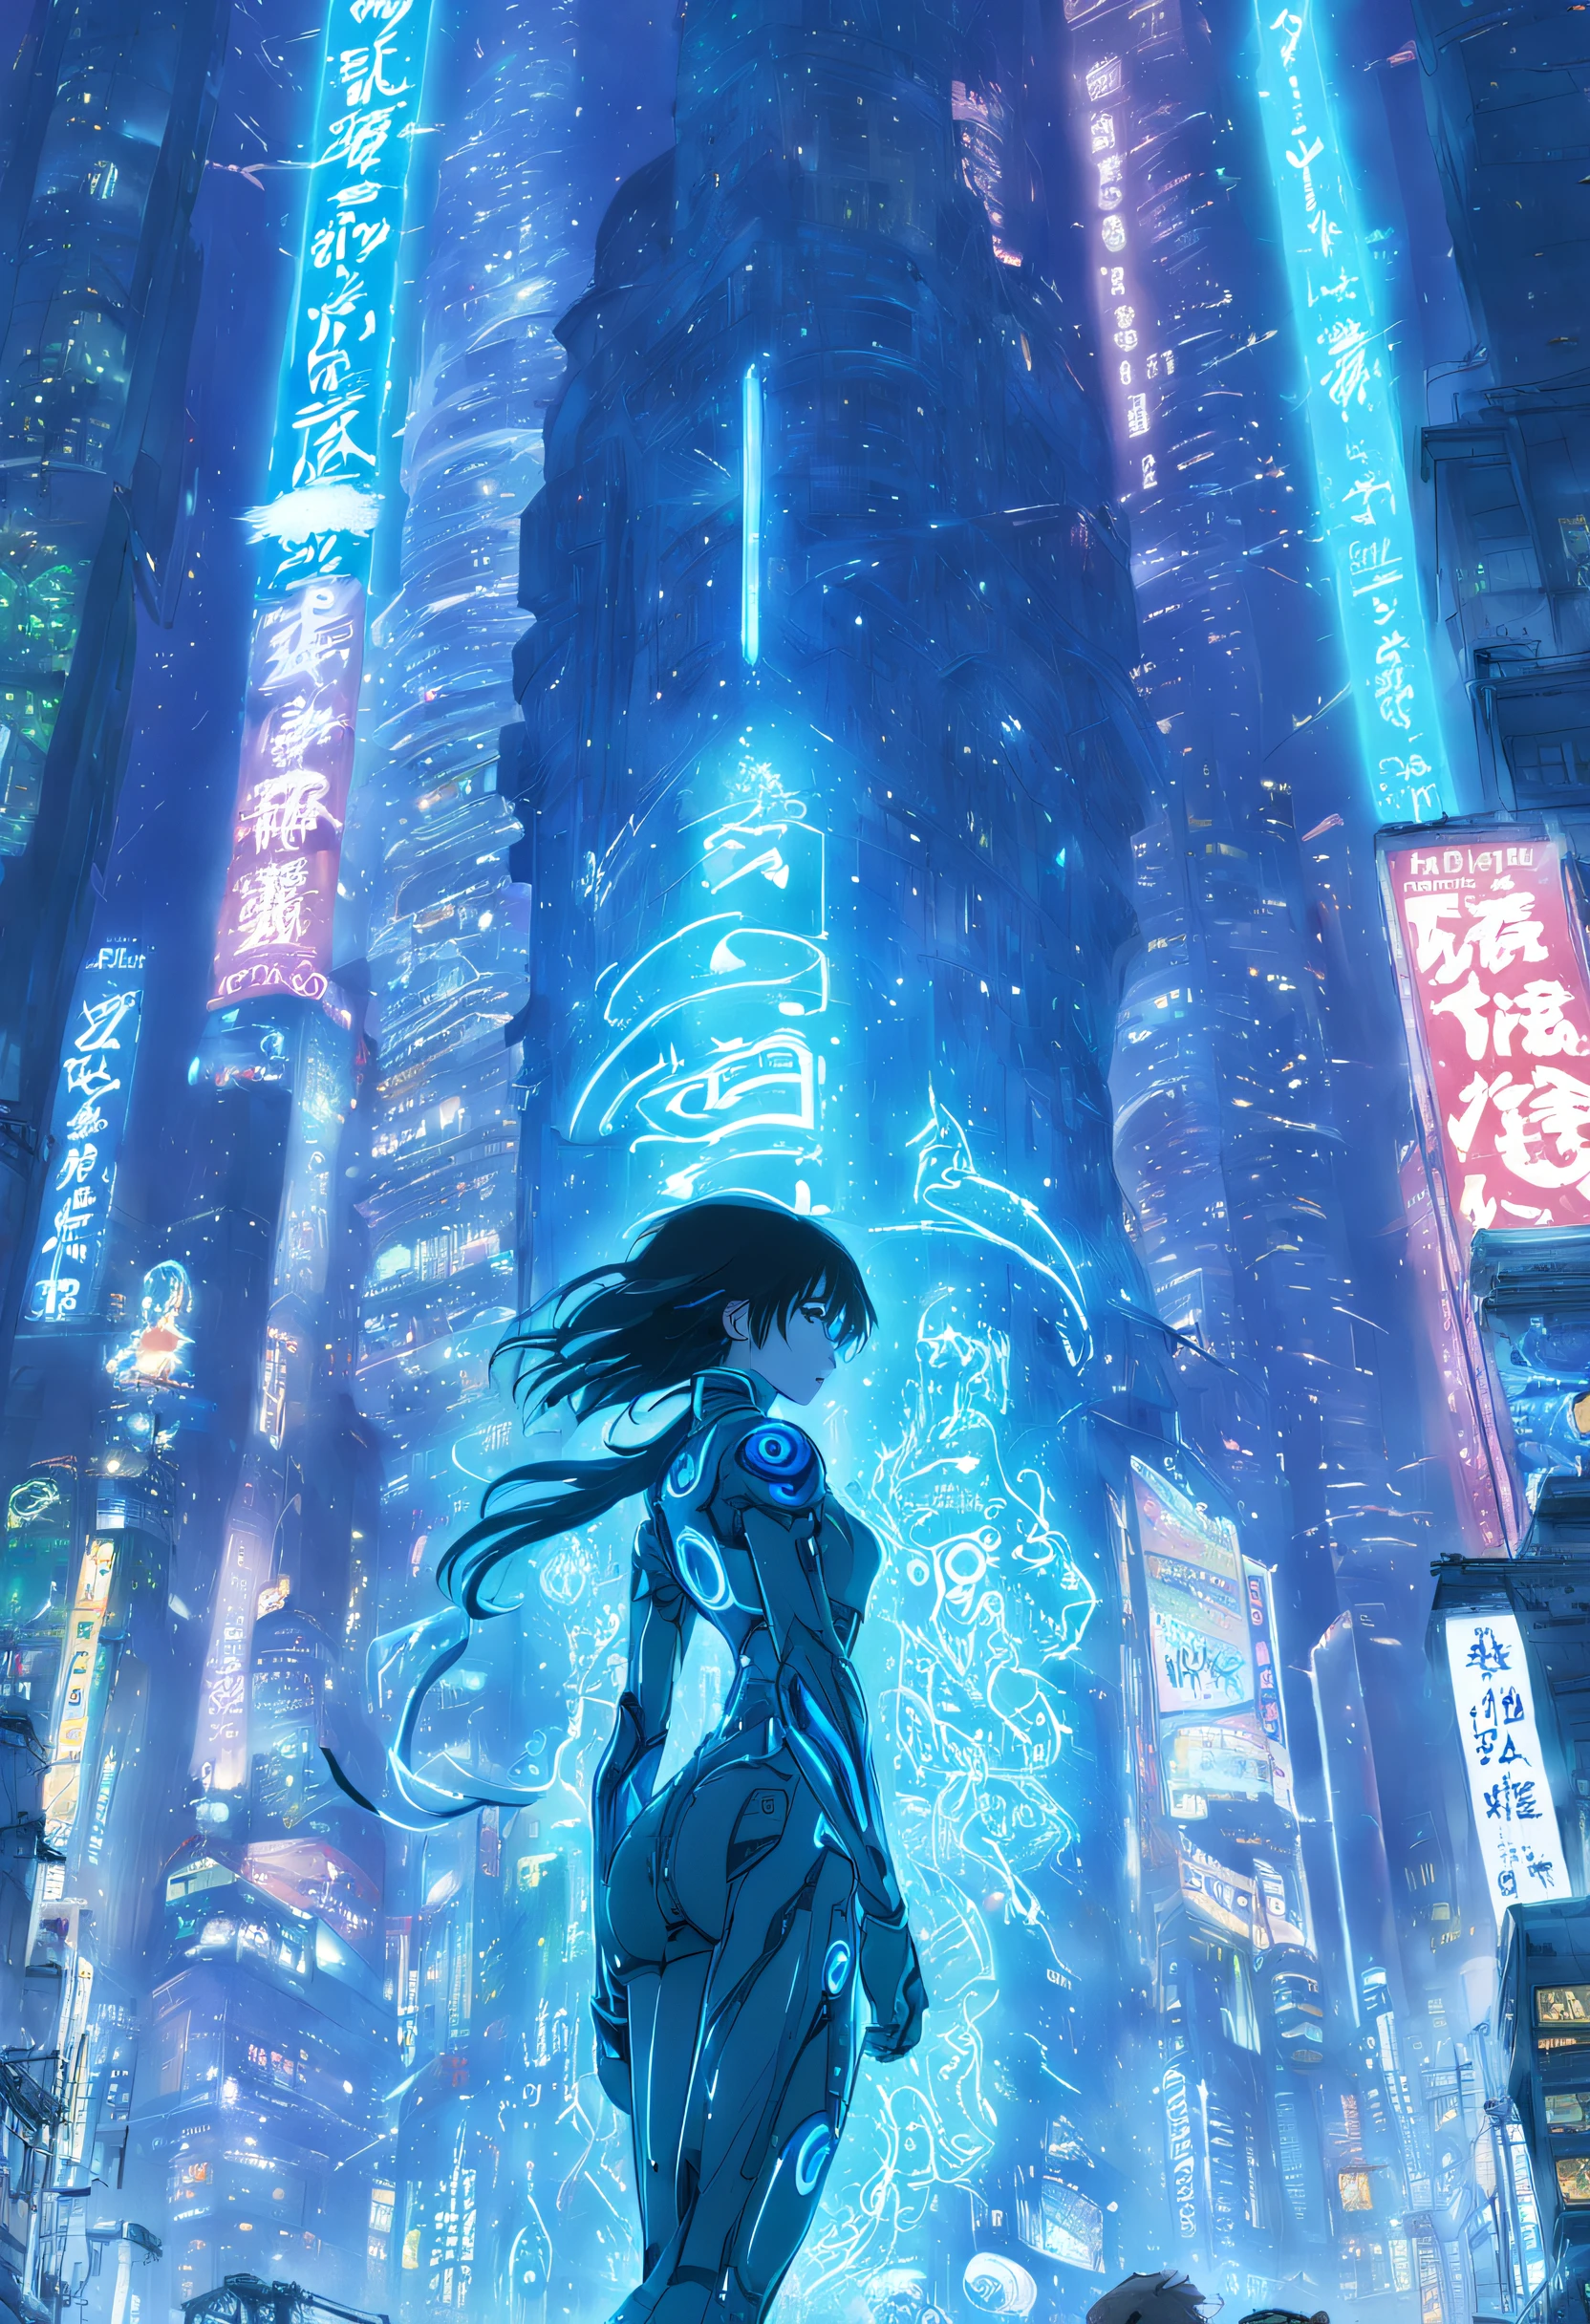 art dynamique par Yoshitaka Amano, Makoto Shinkai, Studio Ghibli, vue arrière cinématographique de cortana posant dynamiquement dans une armure cyberpunk regardant un grand immeuble cyberpunk néo tokyo bien éclairé, rempli d&#39;enseignes au néon